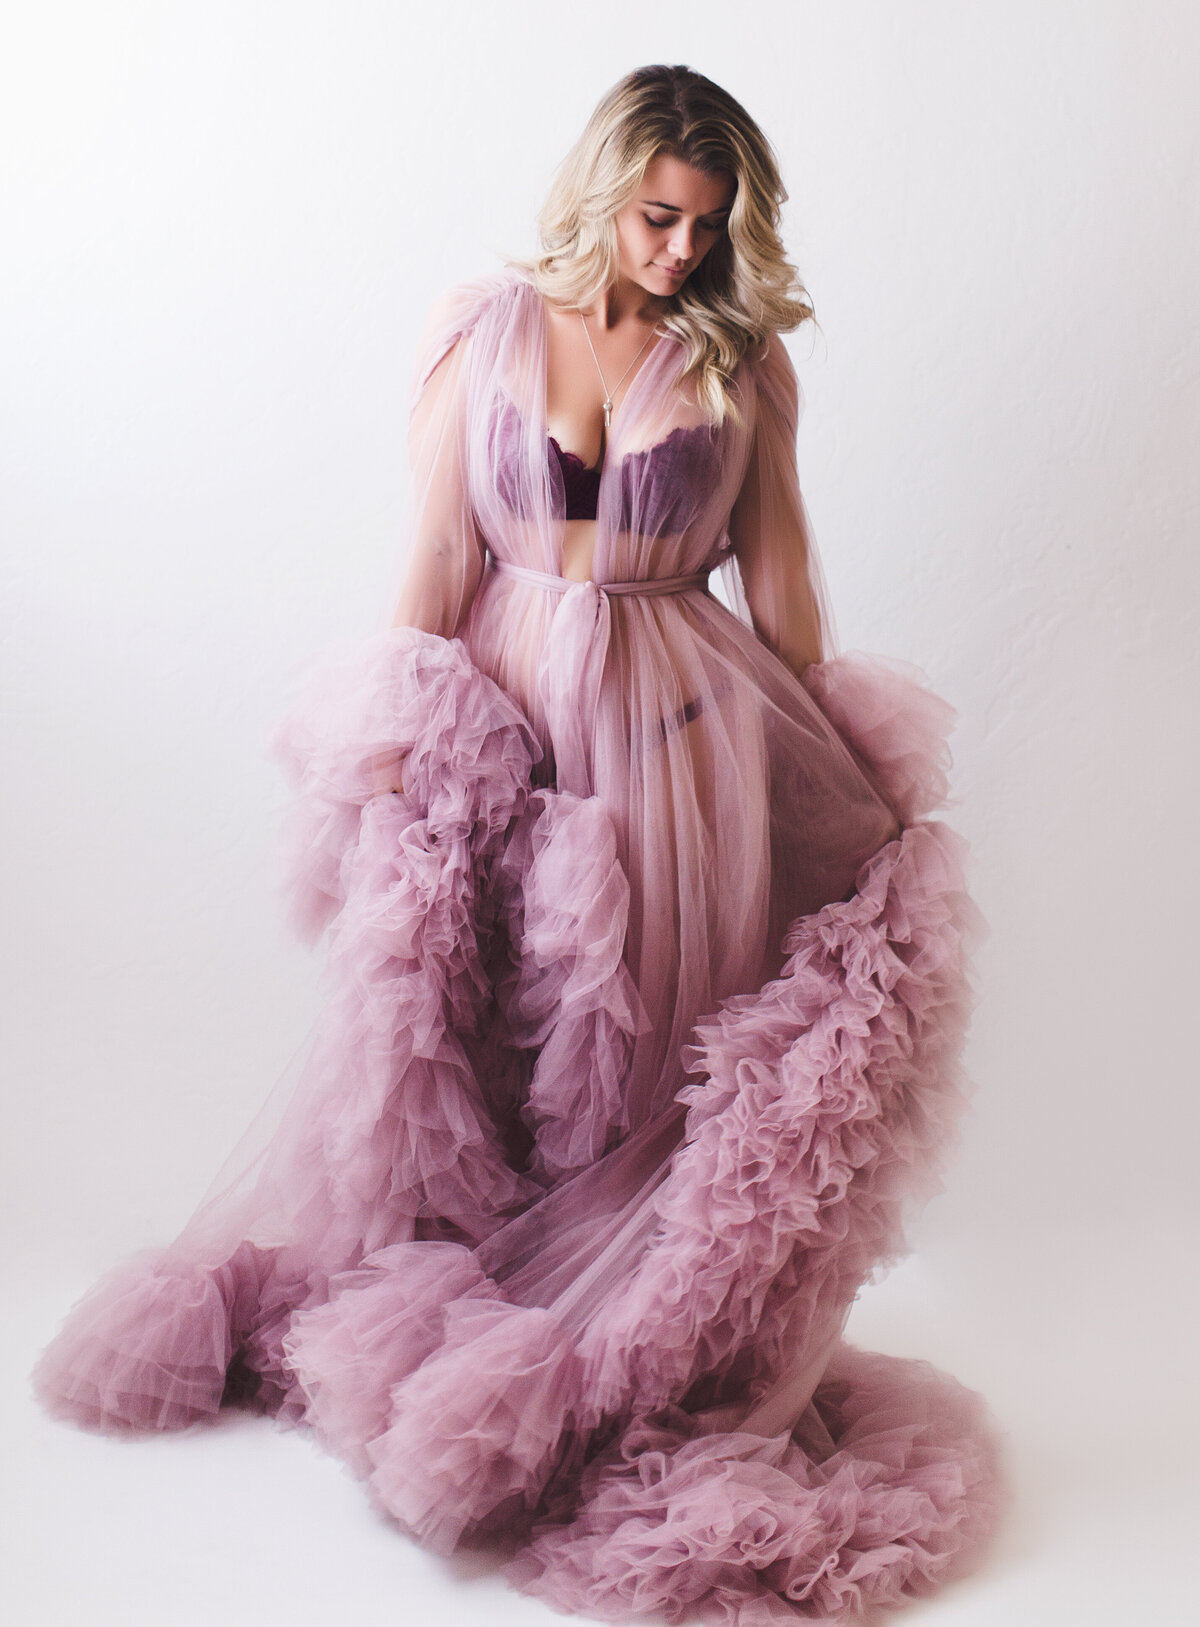 Martha Felix Photography-boudoir-glamour-stylized-photoshoot-phoenix-arizona-paradise valley-pink tulle dress-Ayla-6